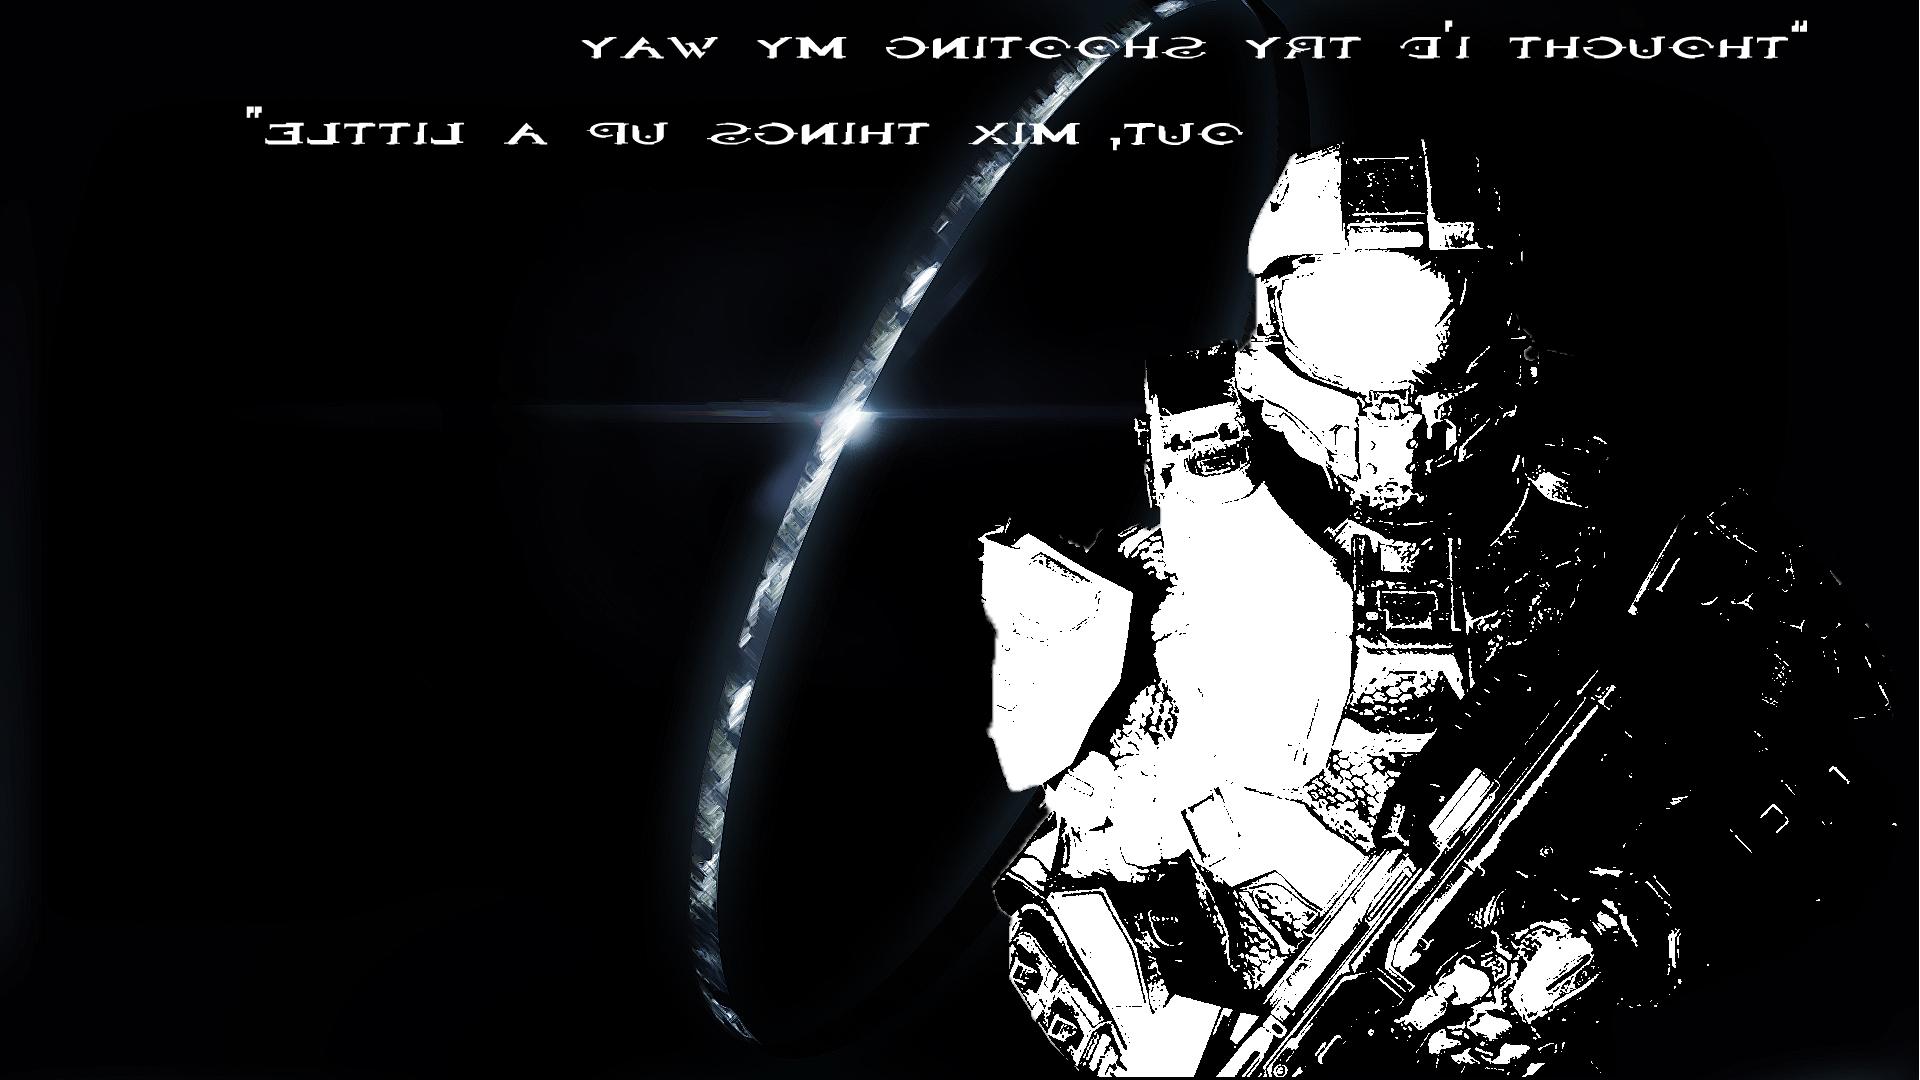 Halo 4 Master Chief Quotes QuotesGram. quotesgram.com. 